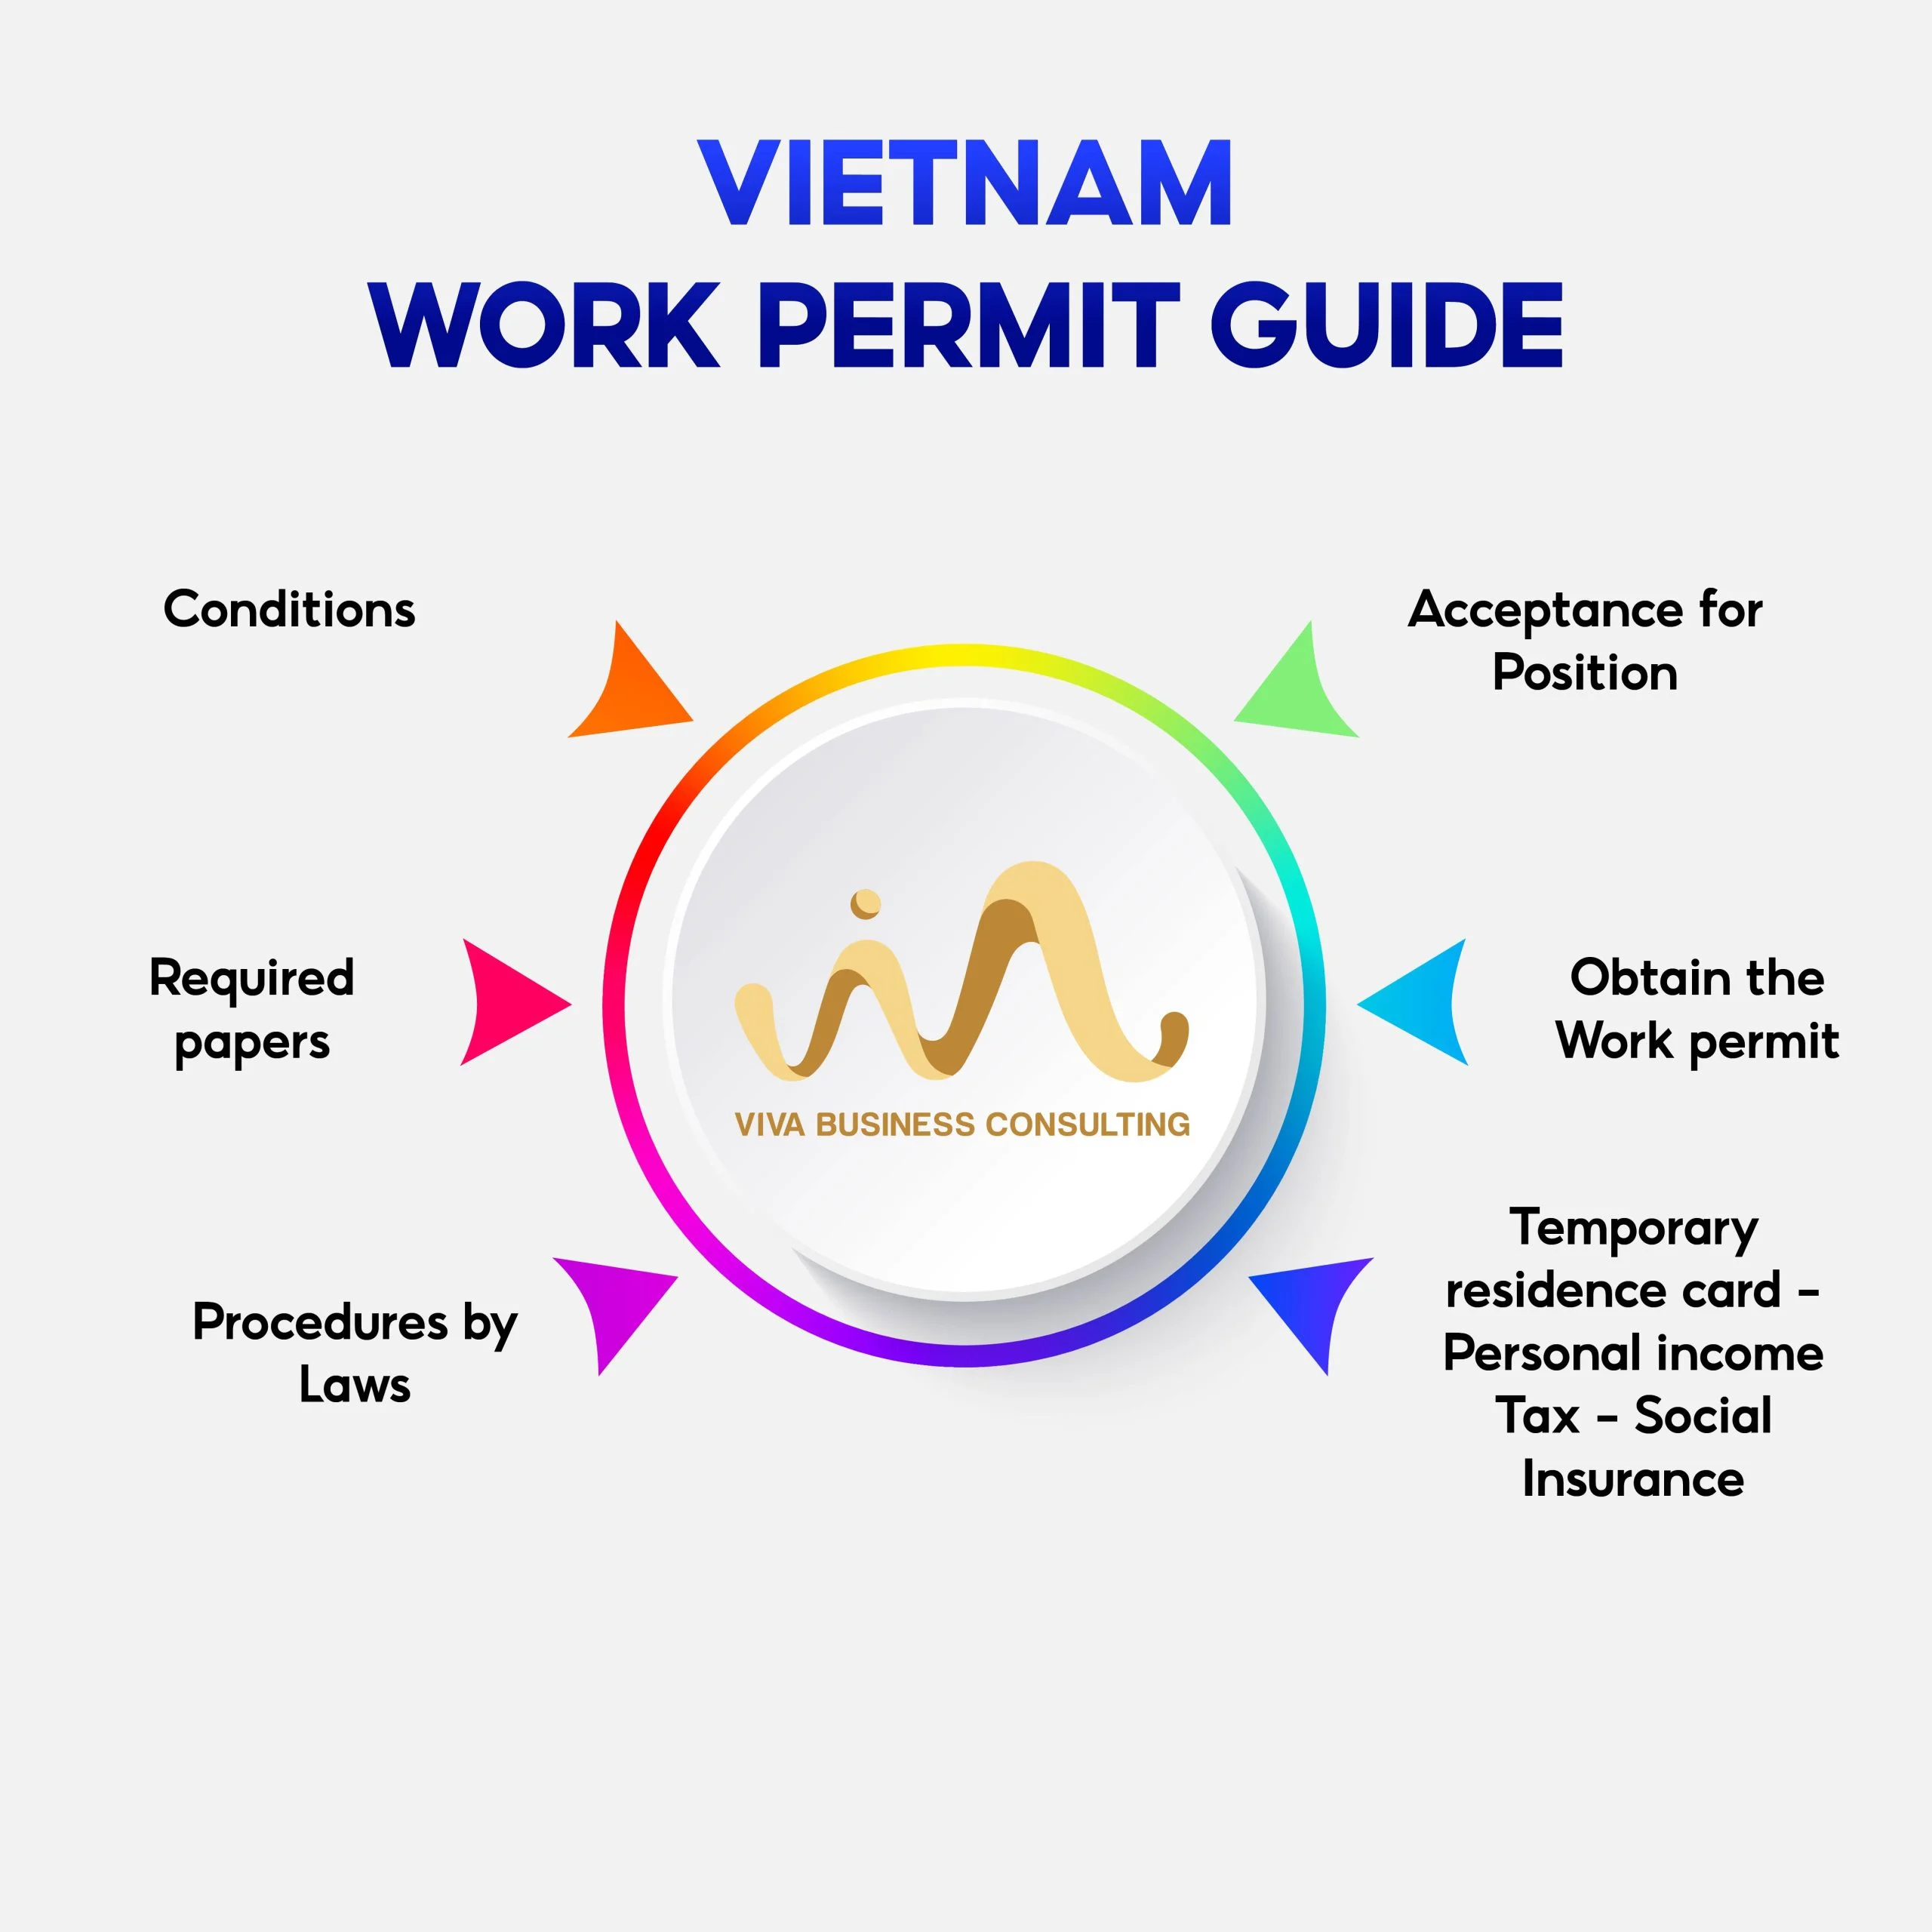 Vietnam workpermit guide